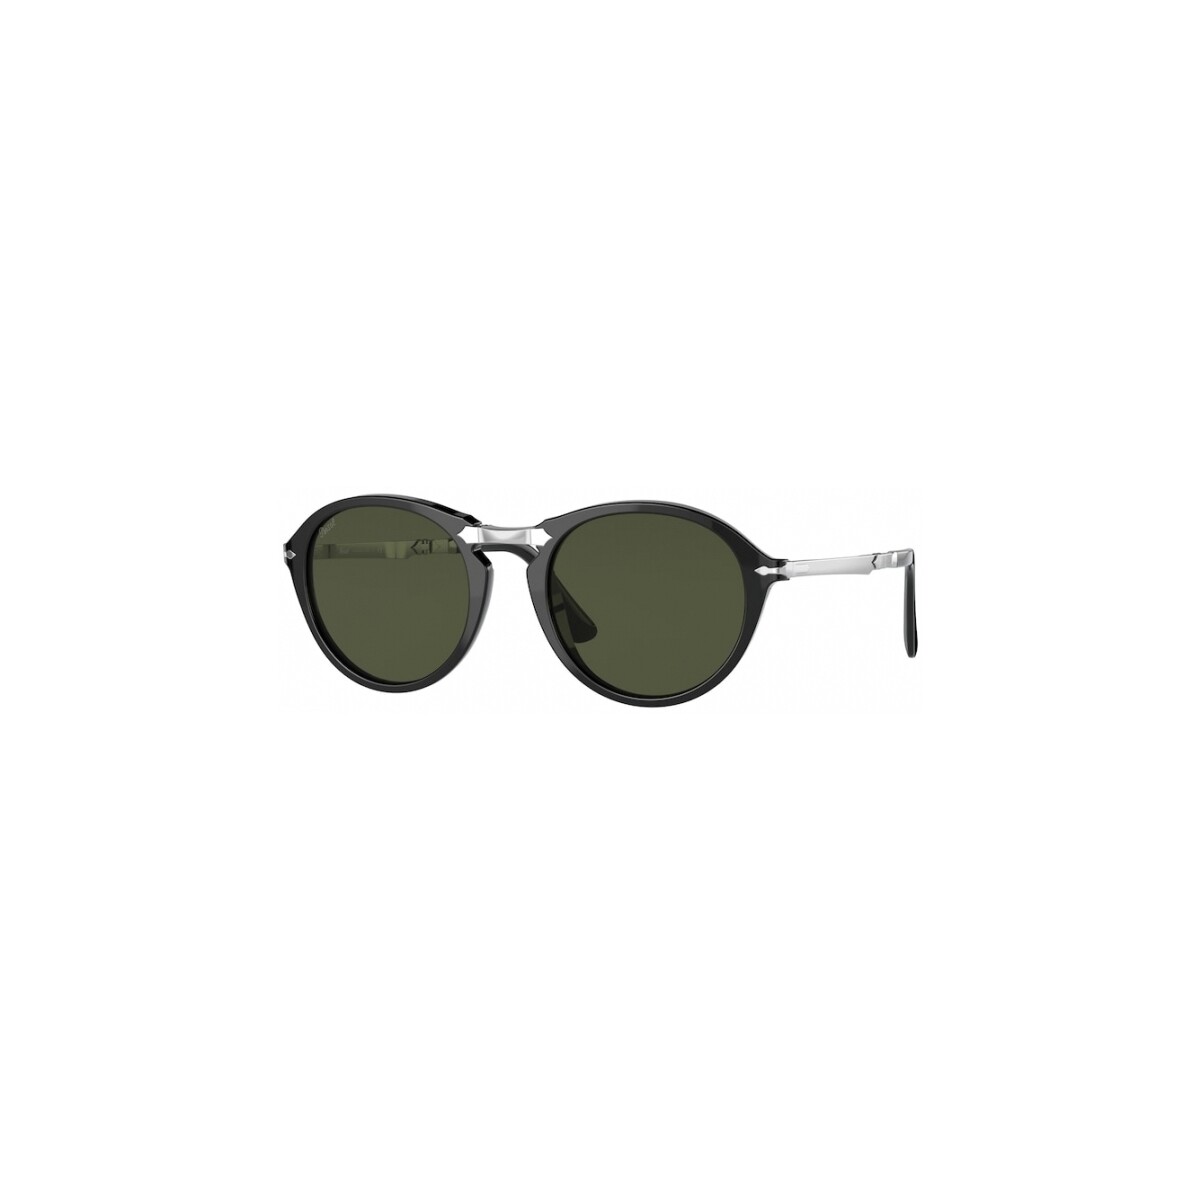 Orologi & Gioielli Occhiali da sole Persol PO3274S Occhiali da sole, Nero/Verde, 50 mm Nero